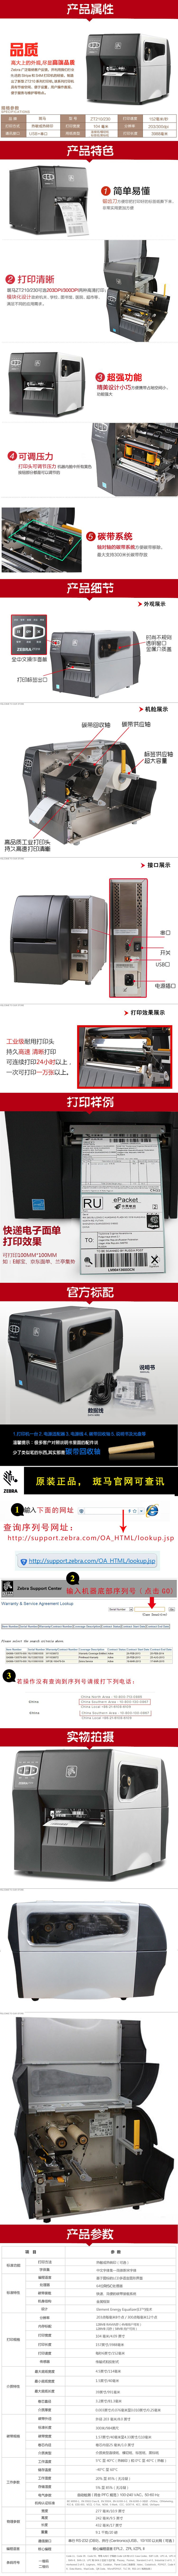 斑马ZEBRA ZT210(203dpi) 工业用条码打印机 热敏热转印 标签打印机